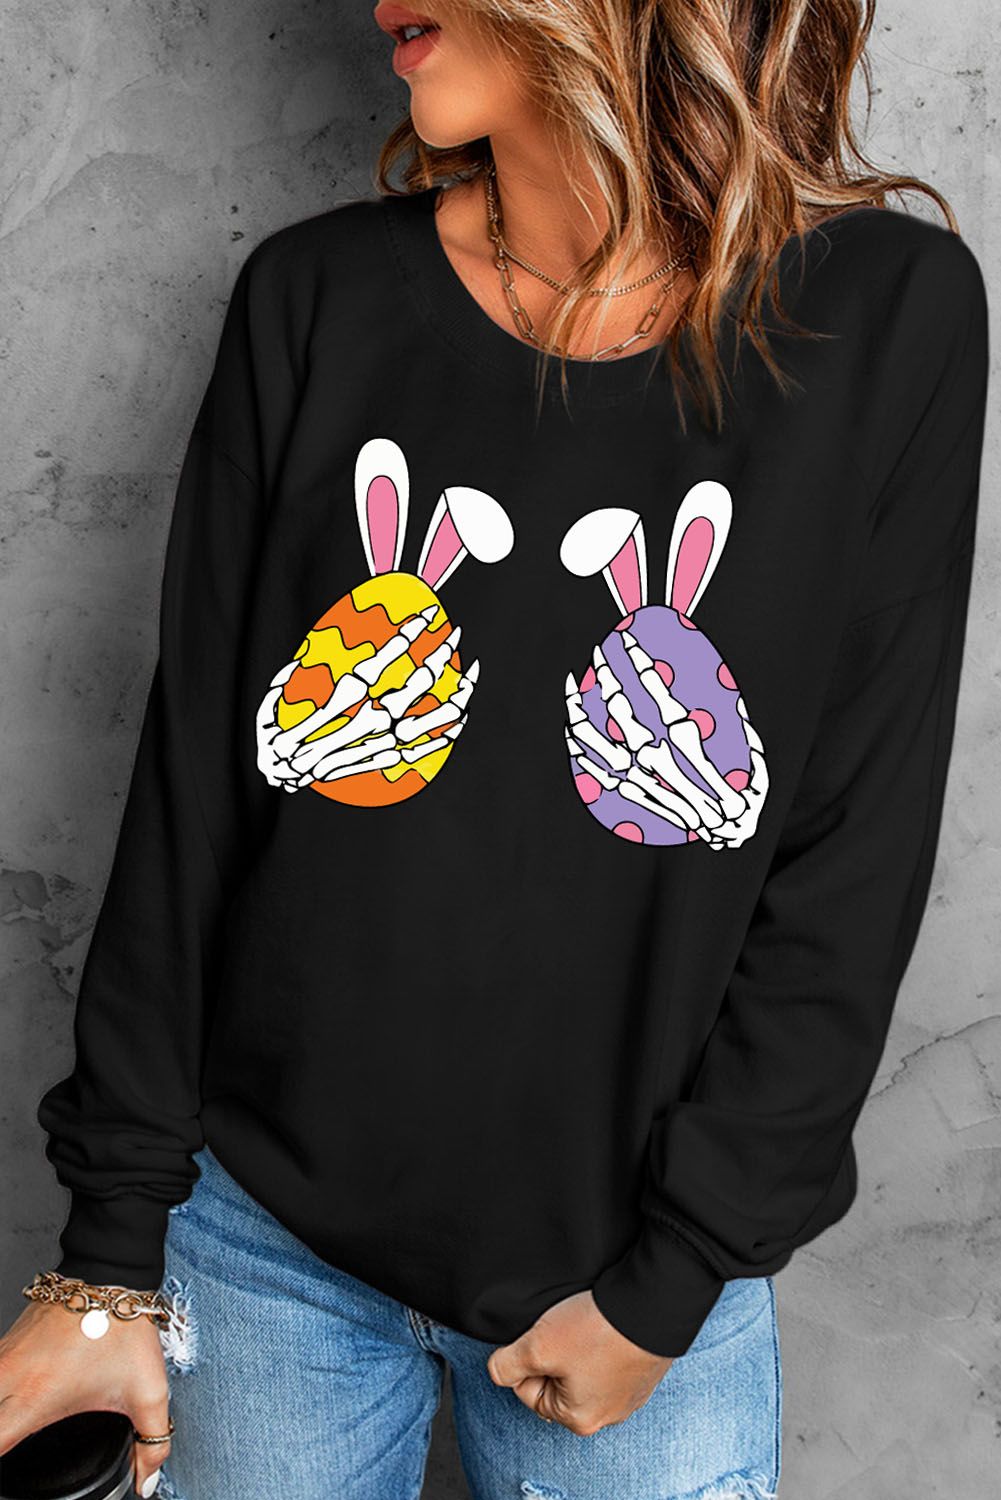 LC25314502-2-S, LC25314502-2-M, LC25314502-2-L, LC25314502-2-XL, LC25314502-2-2XL, Black Skull Easter Print Sweatshirt Crew Neck Pullover Tops for Women